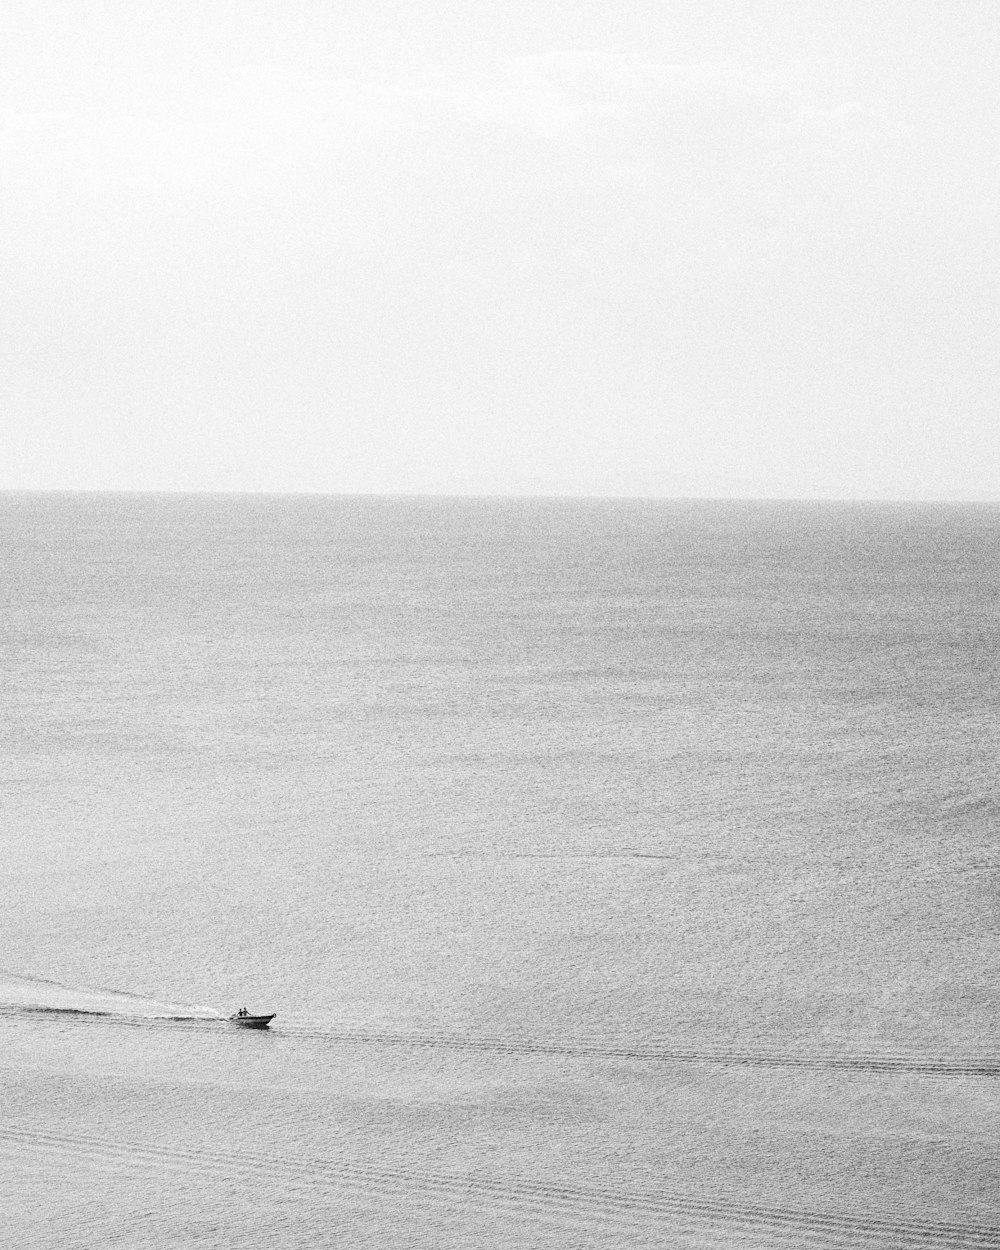 海に浮かぶボートに乗った人物のグレースケール写真